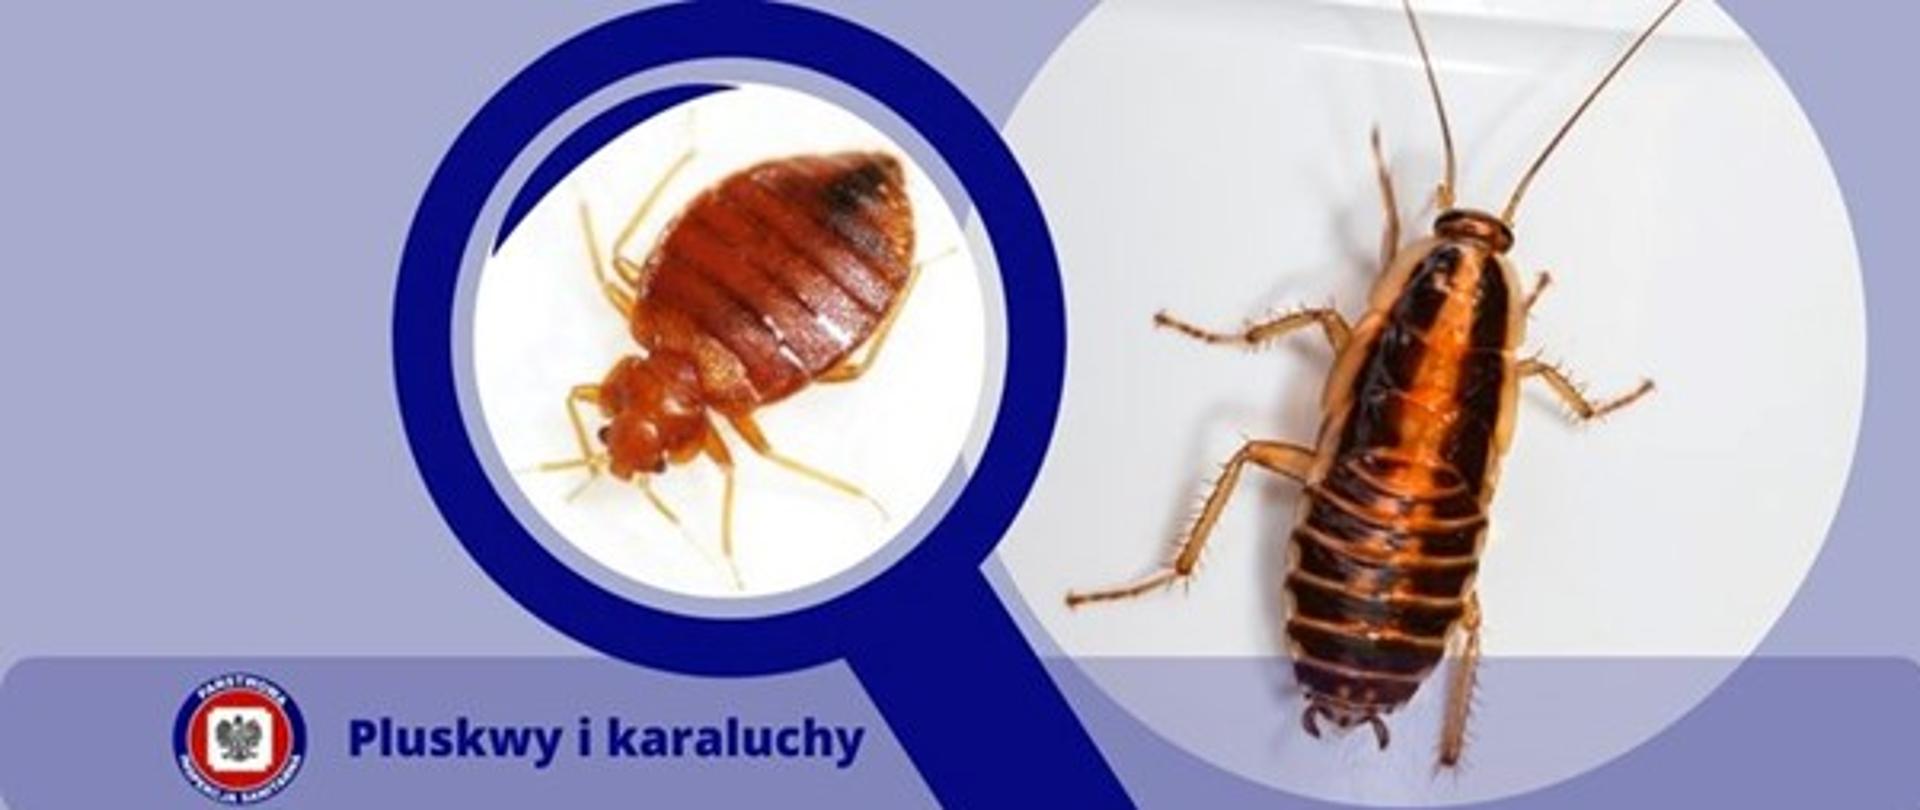 Na zdjęciu widoczne postać pluskwy i karalucha, poniżej logo Inspekcji Sanitarnej i napis Pluskwy i karaluchy